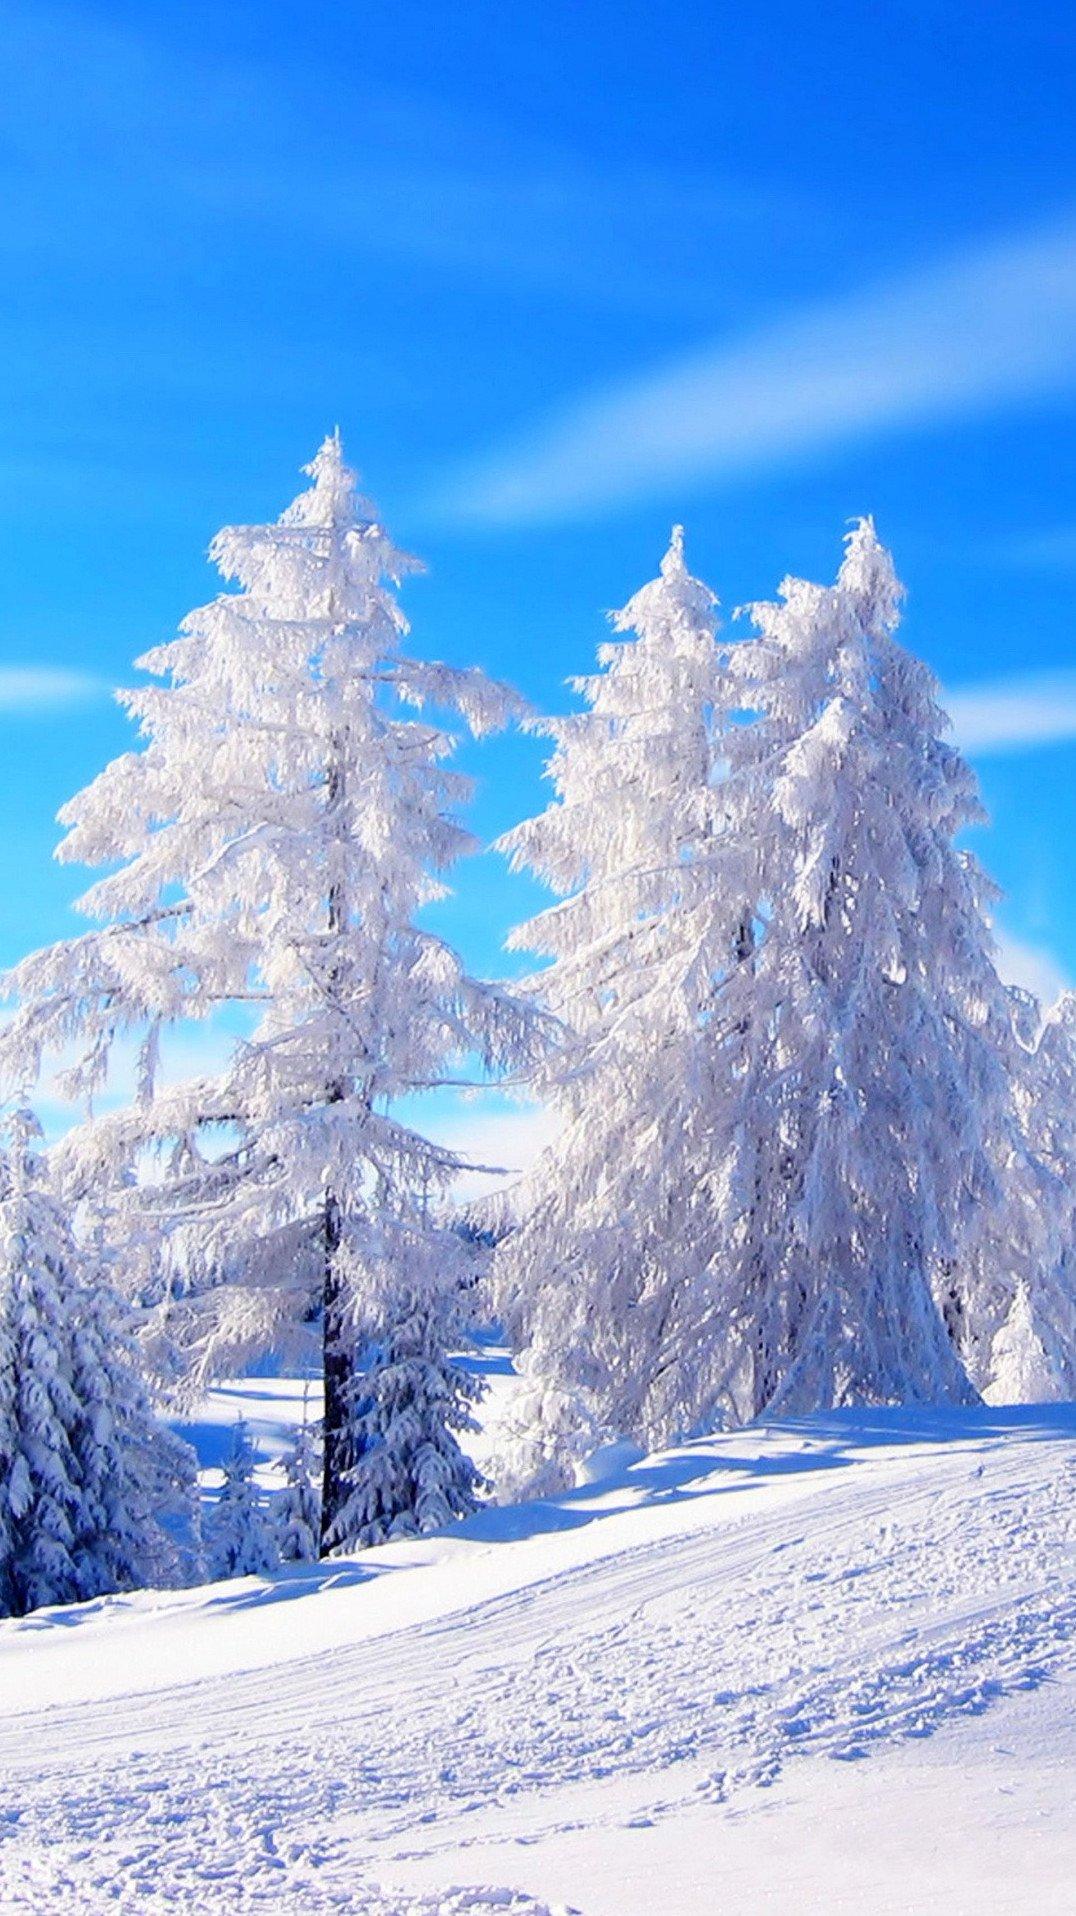 Скачать обои \"Зима\" на телефон в высоком качестве, вертикальные картинки \" Зима\" бесплатно